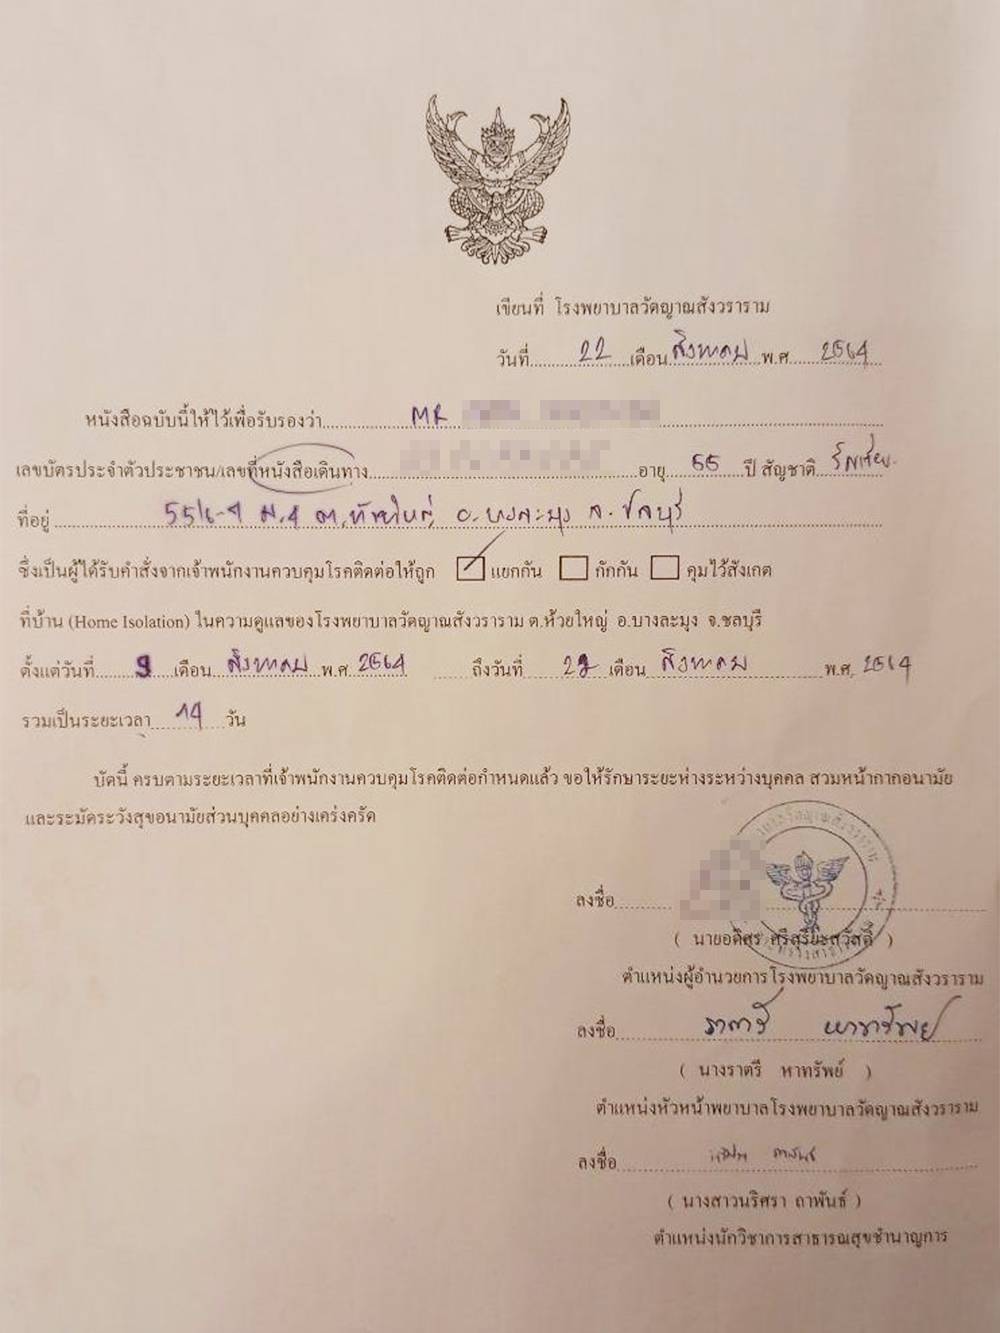 Документ переболевшего коронавирусом в Таиланде с датами и паспортными данными